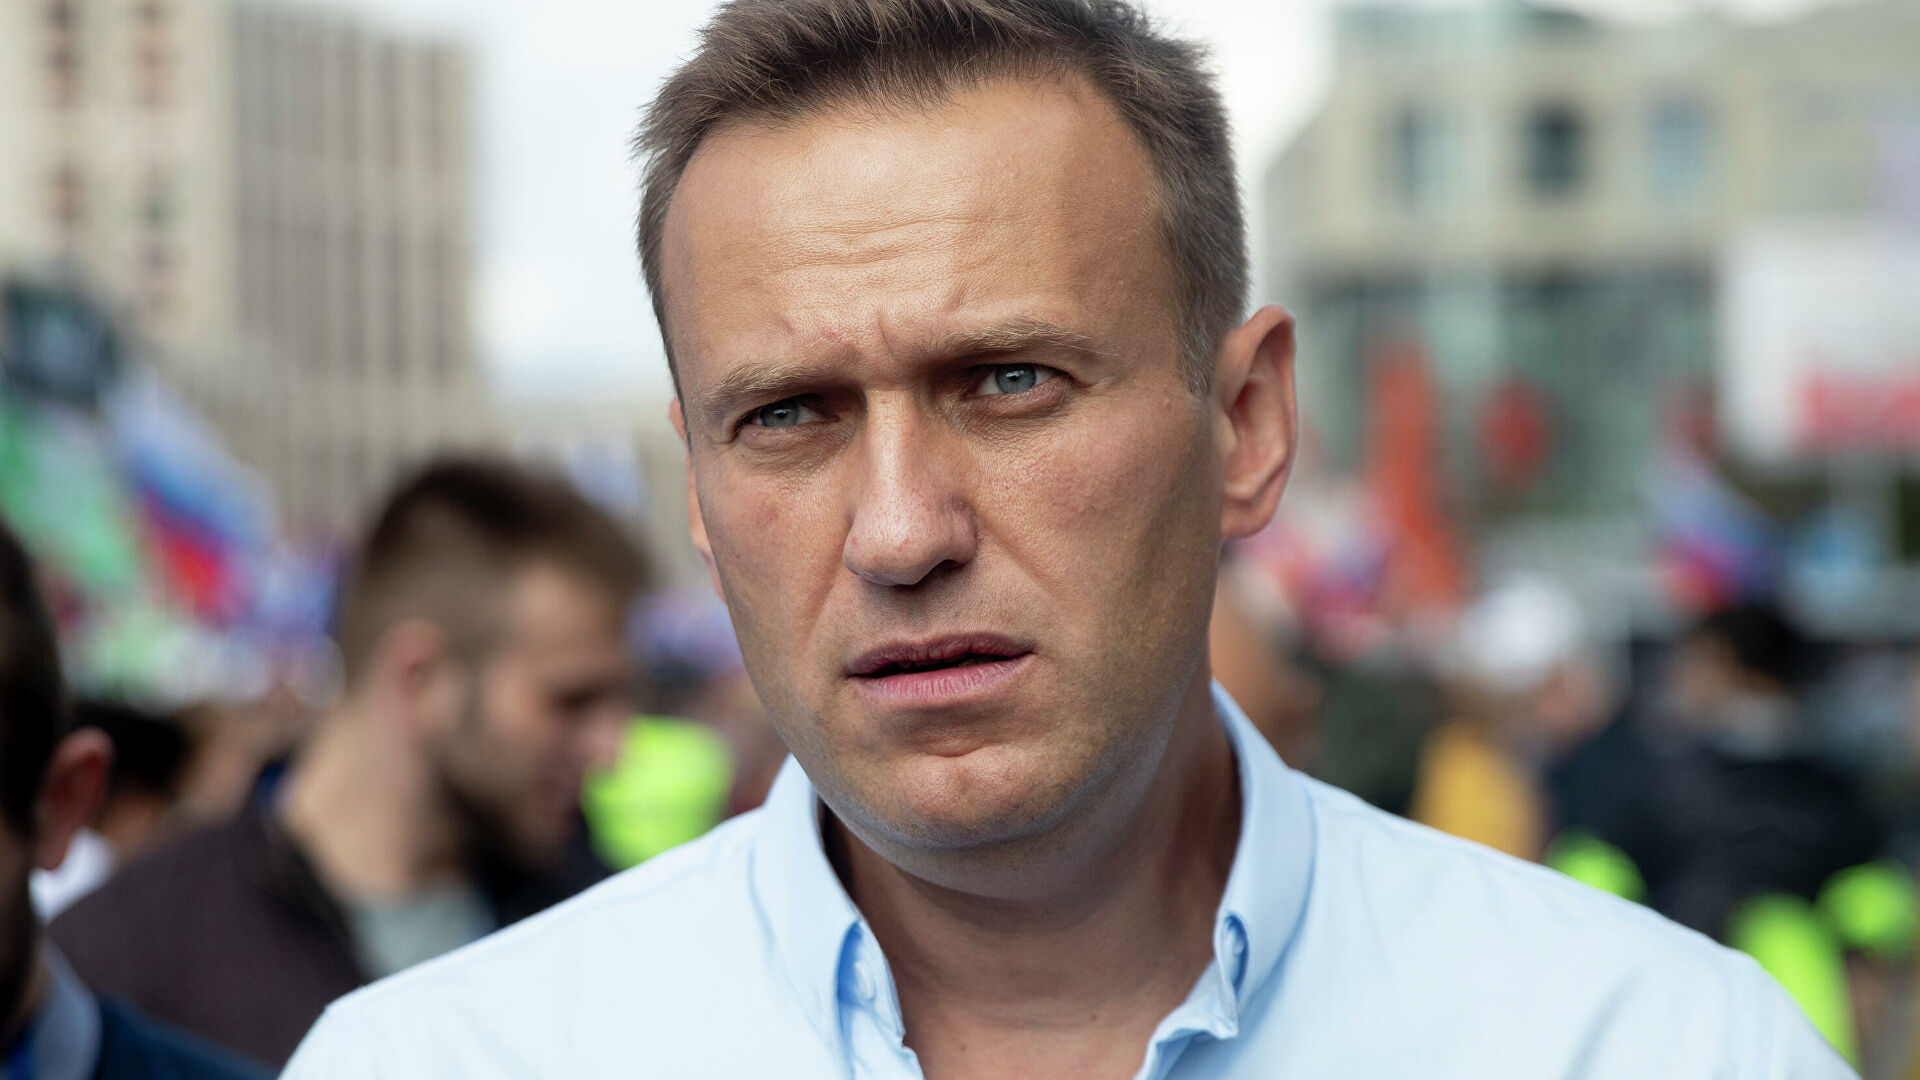 Алексей Навальный полностью пришел в себя после отравления – СМИ